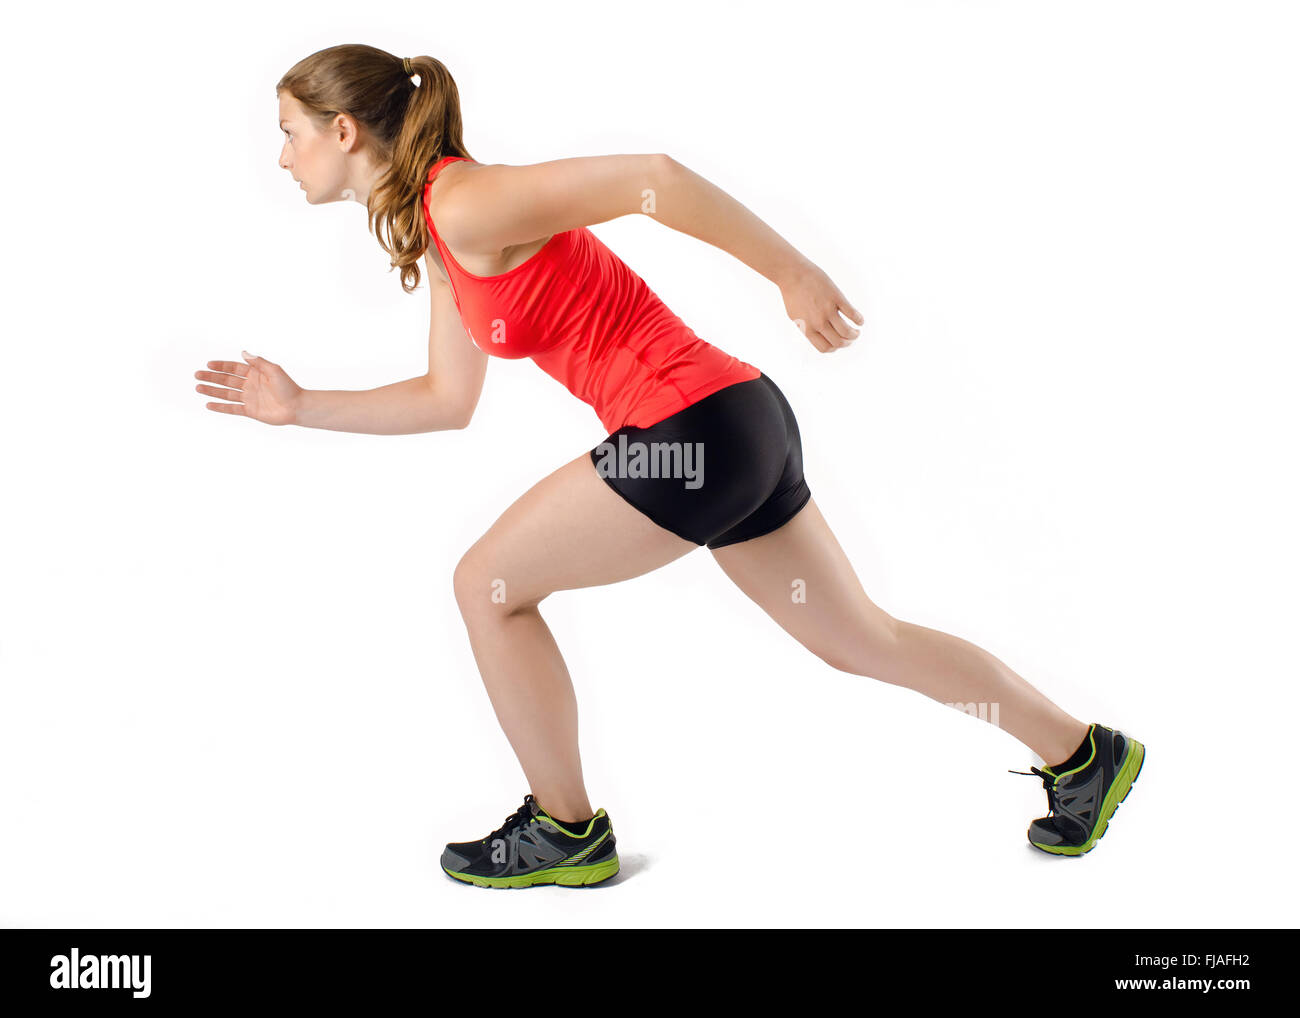 Deportes atlético joven mujer corriendo en perfil. Aislado sobre fondo blanco. Foto de stock